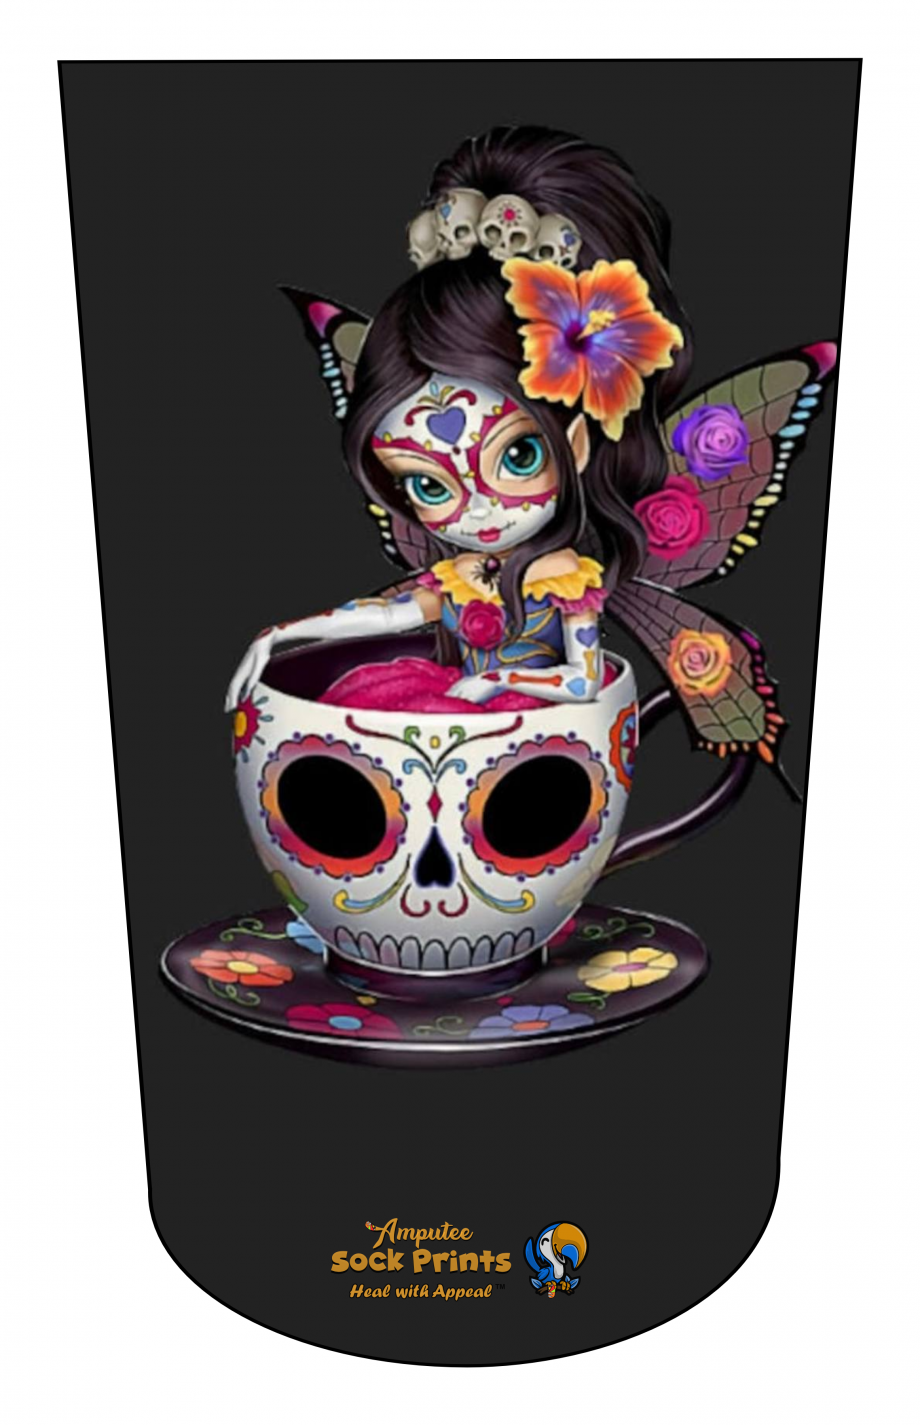 Pretty skull girl teatime V1